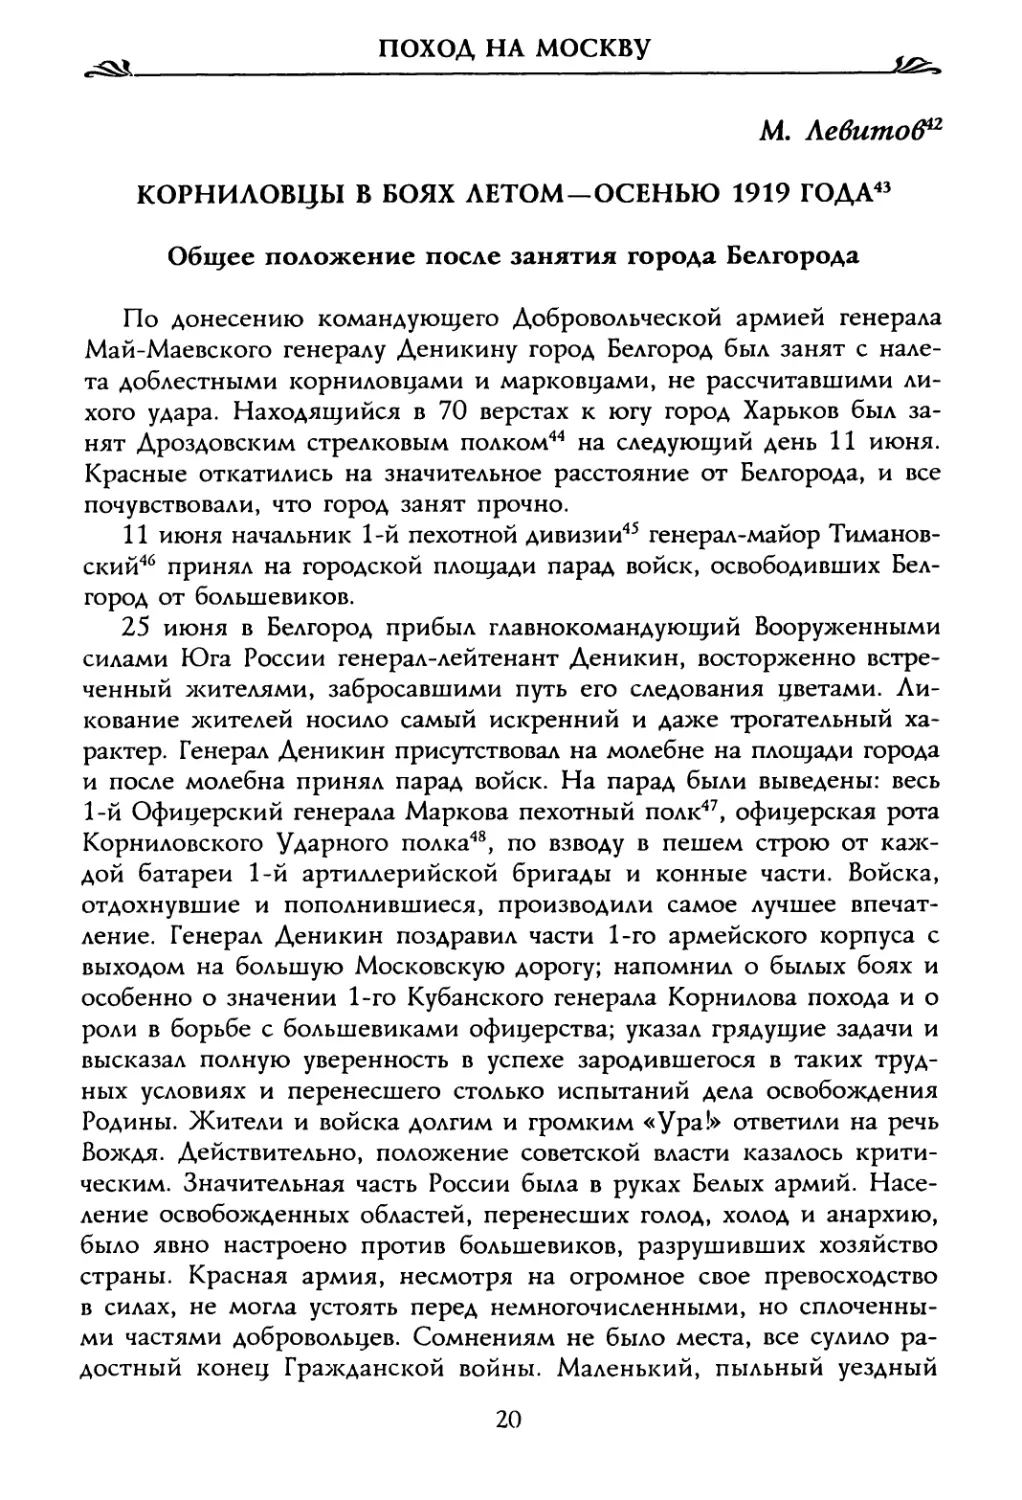 М. Левитоб. Корниловцы в боях летом—осенью 1919 года